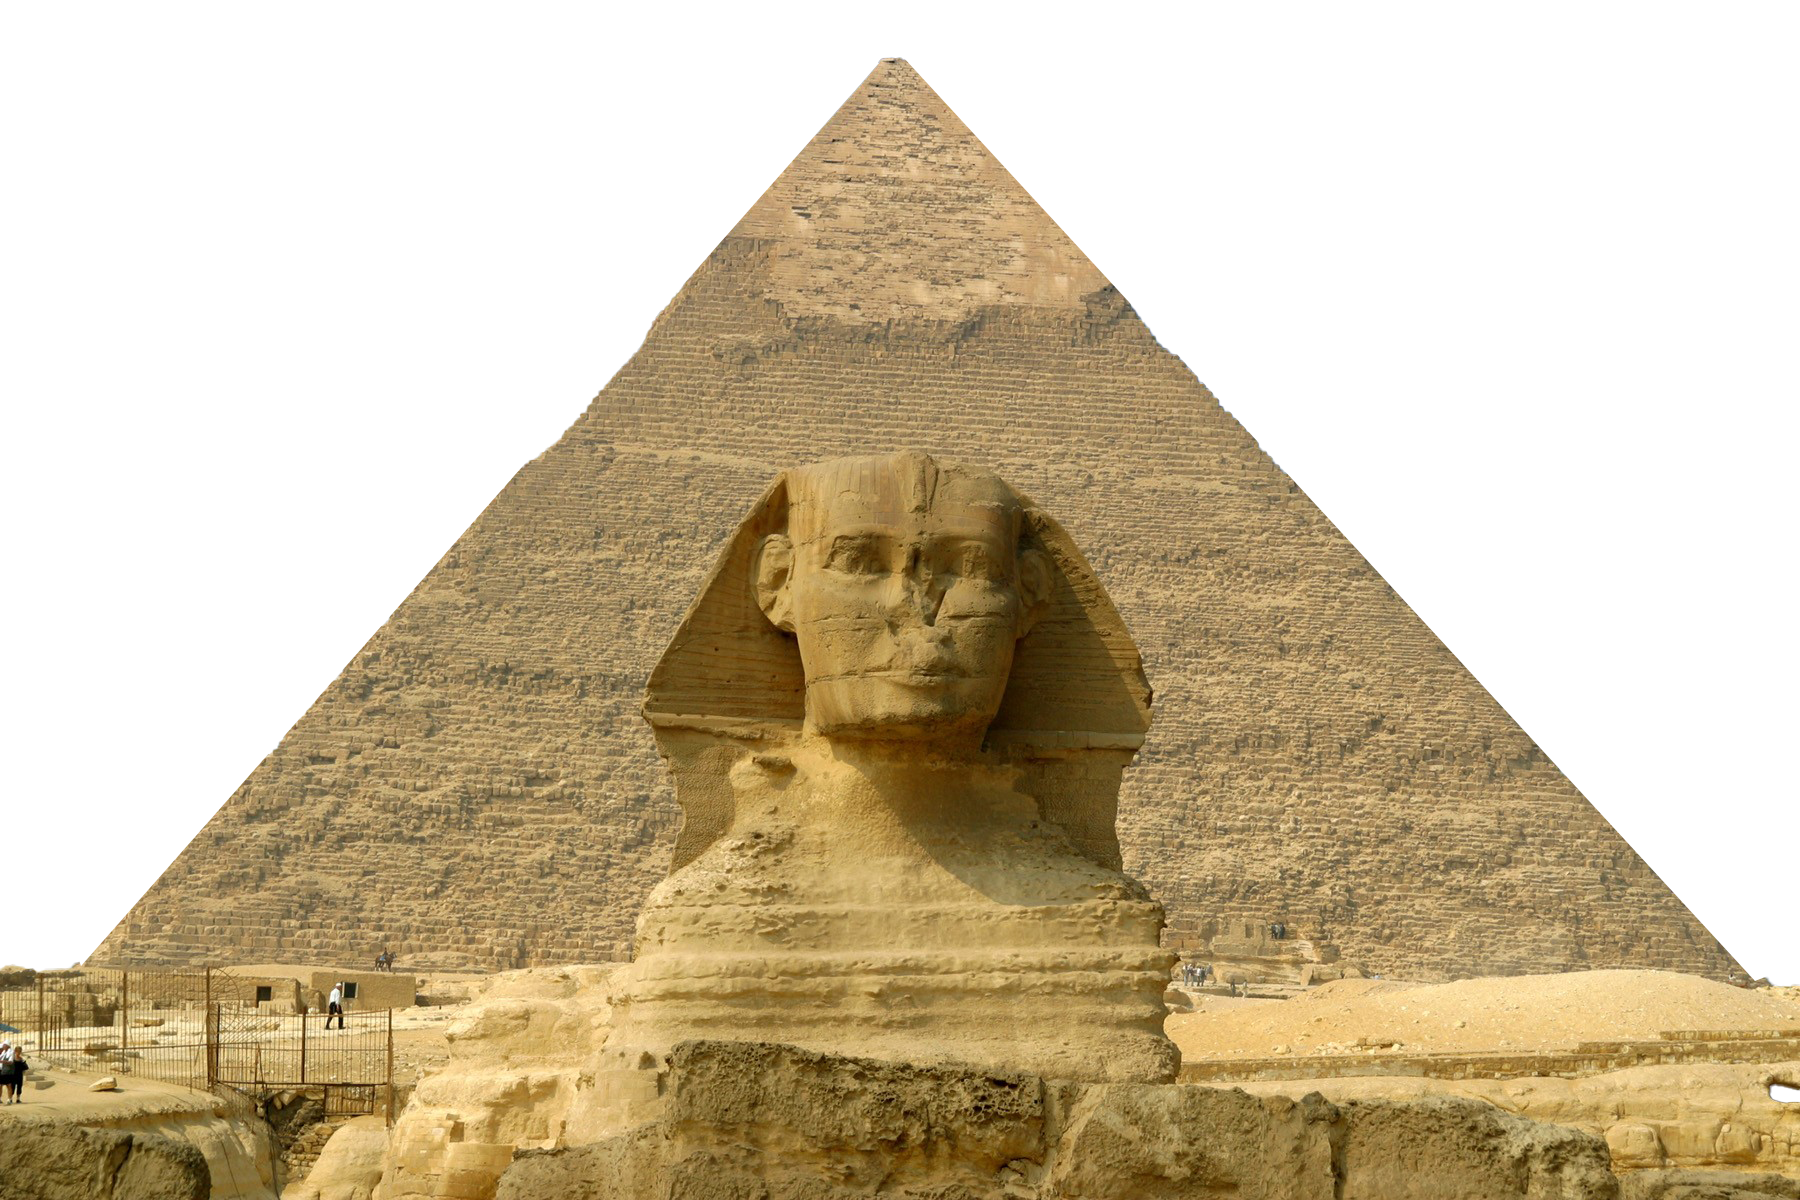 Mesir piramida PNG image